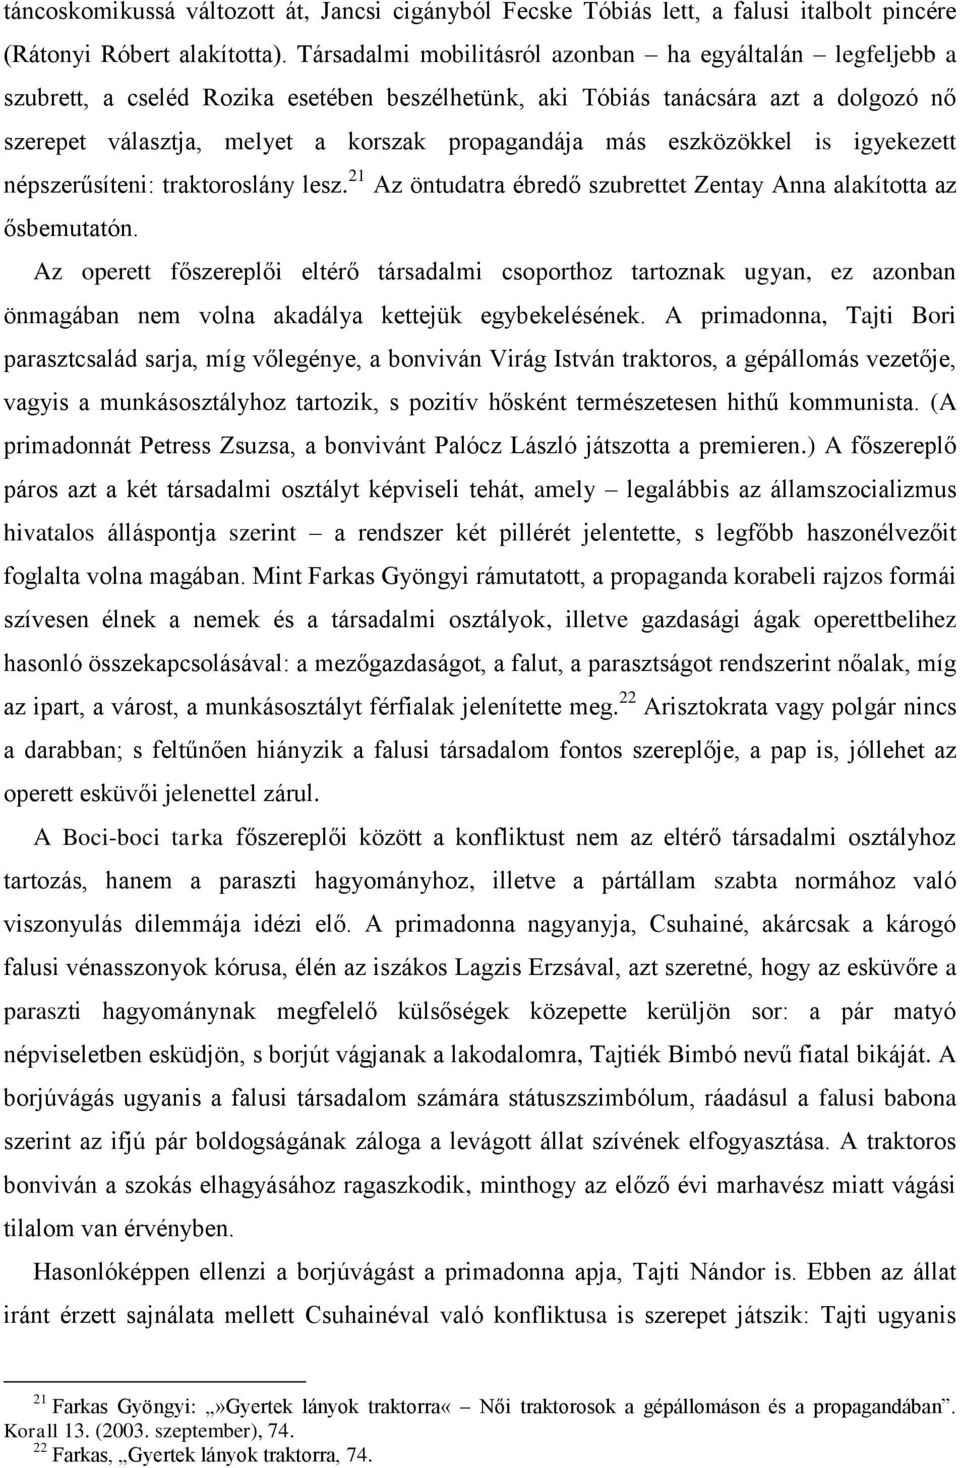 Bozó Péter: Műfaji hagyomány és politikai kisajátítás Vincze Ottó Boci-boci  tarka című operettjében (1953) 1 - PDF Free Download